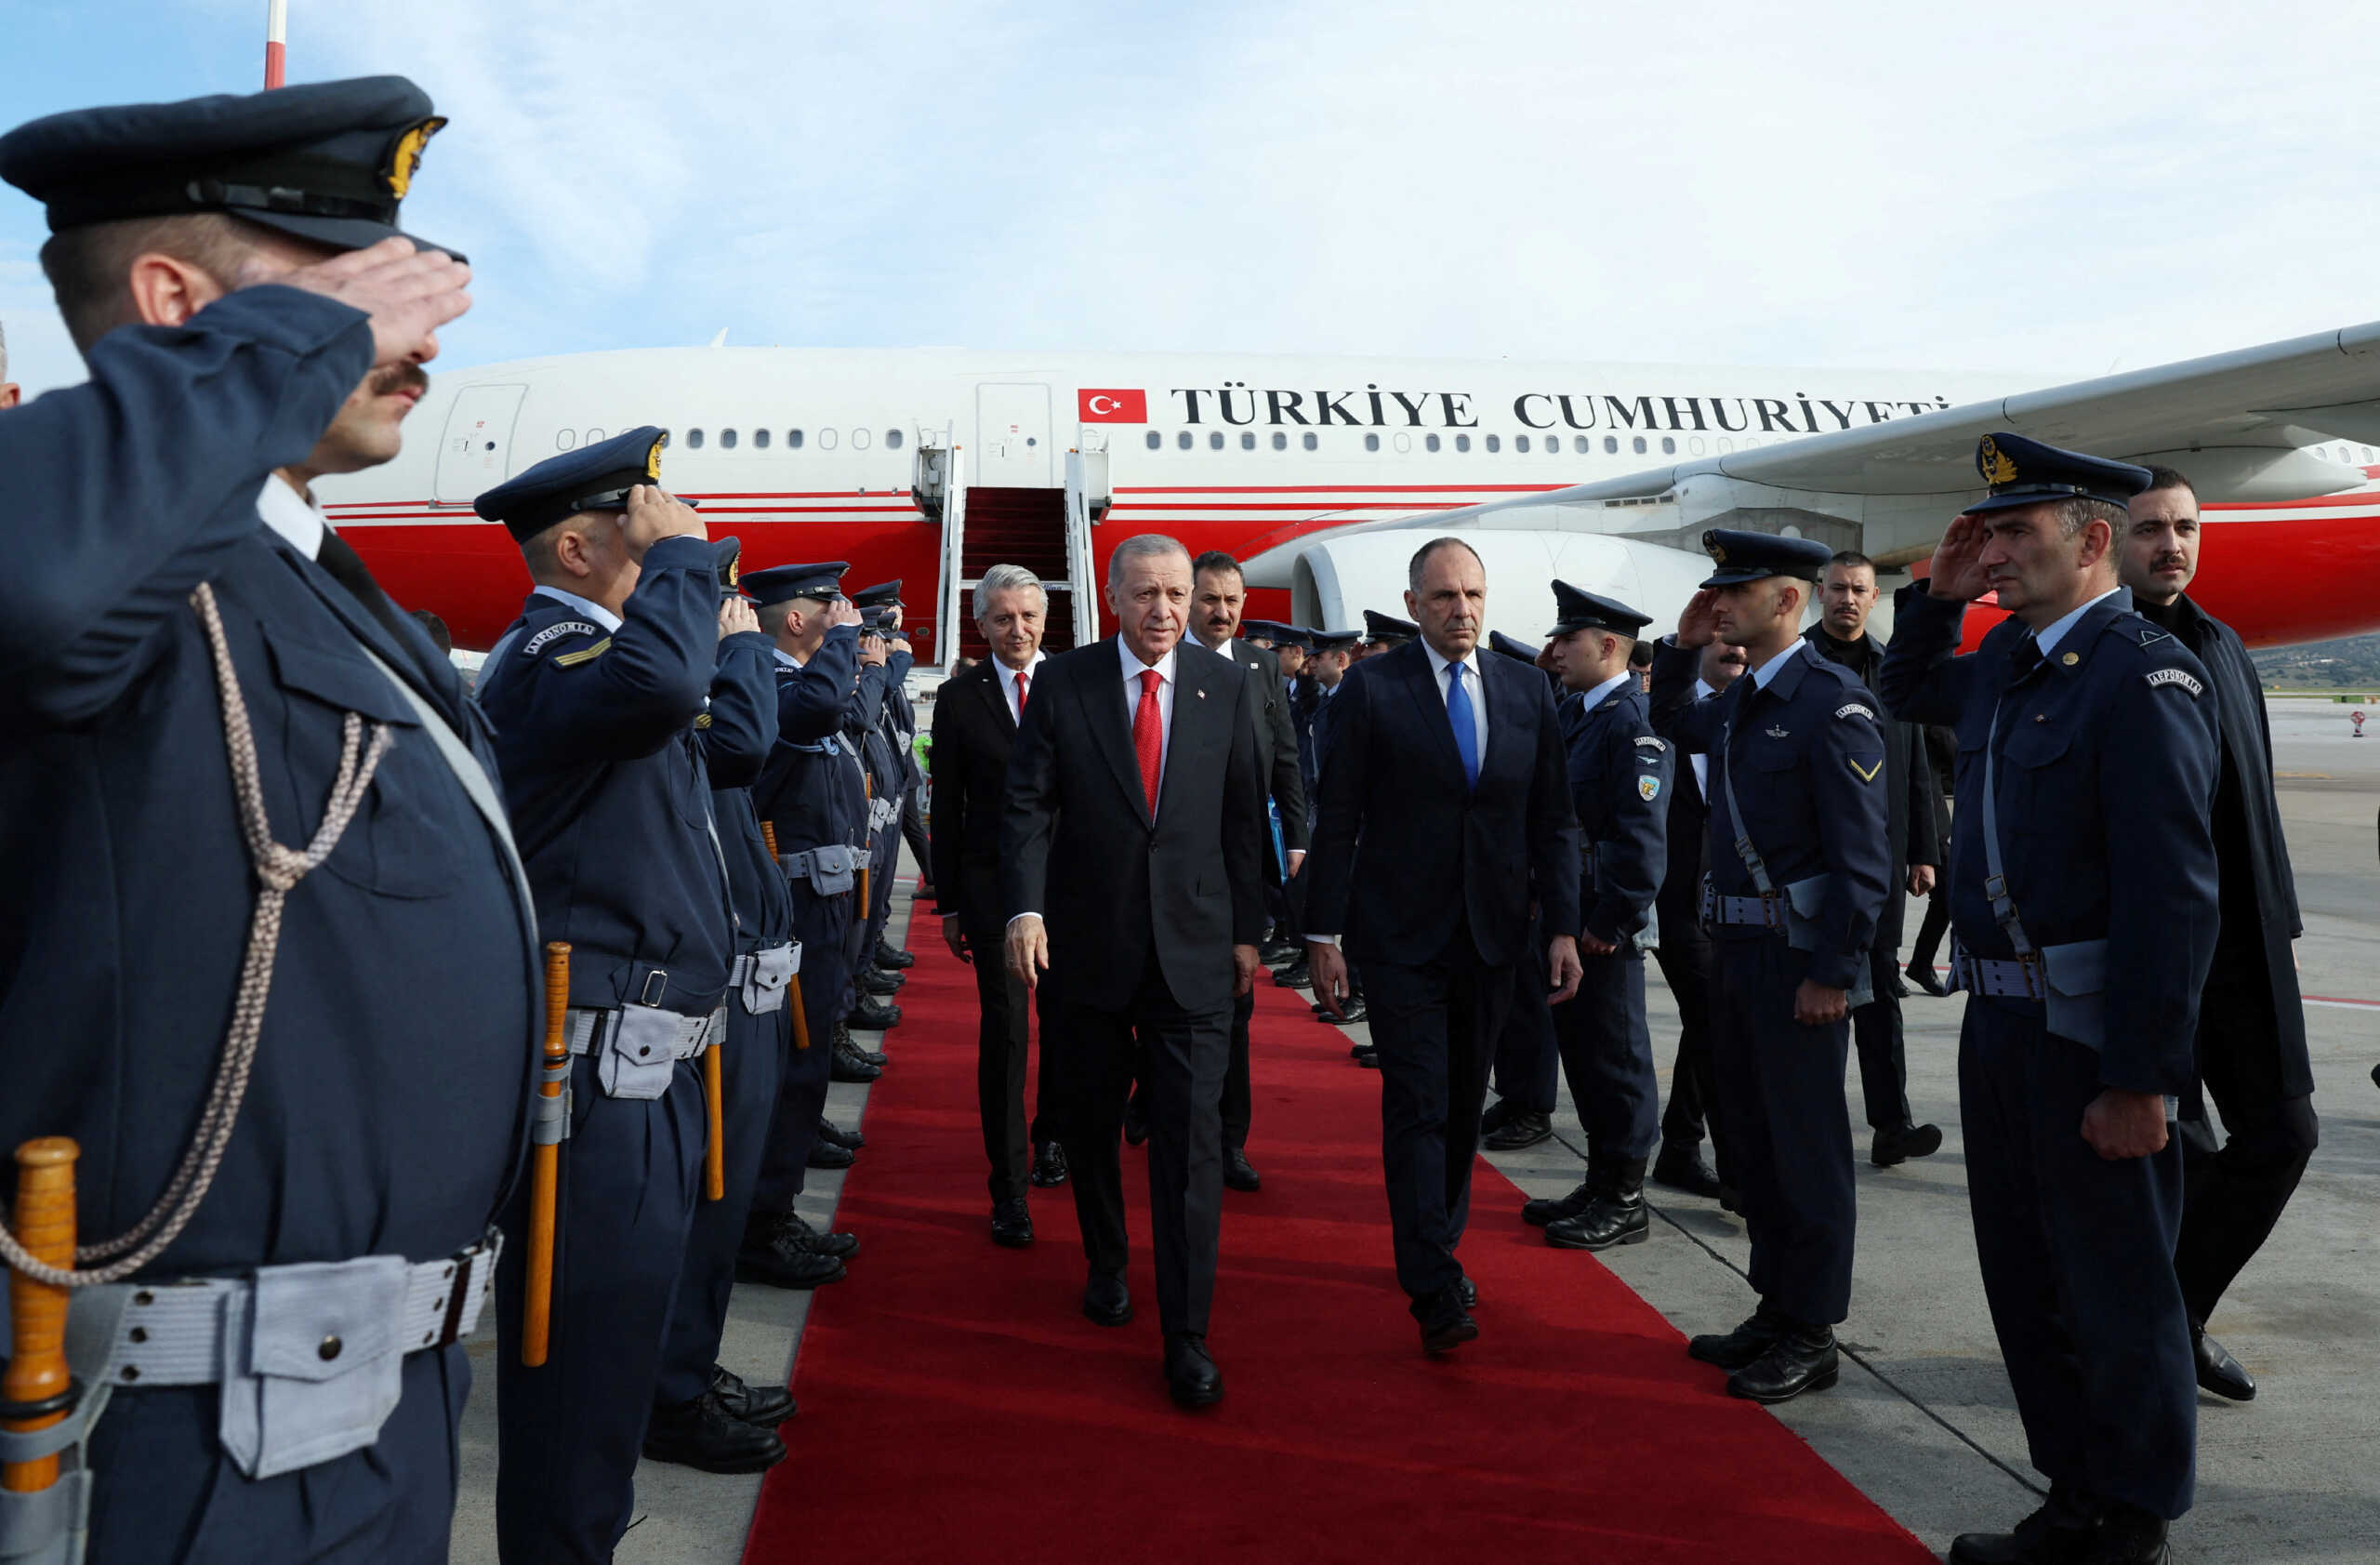 Επίσκεψη Ερντογάν στην Αθήνα: Τι θα αναφέρει η διακήρυξη Ελλάδας – Τουρκίας